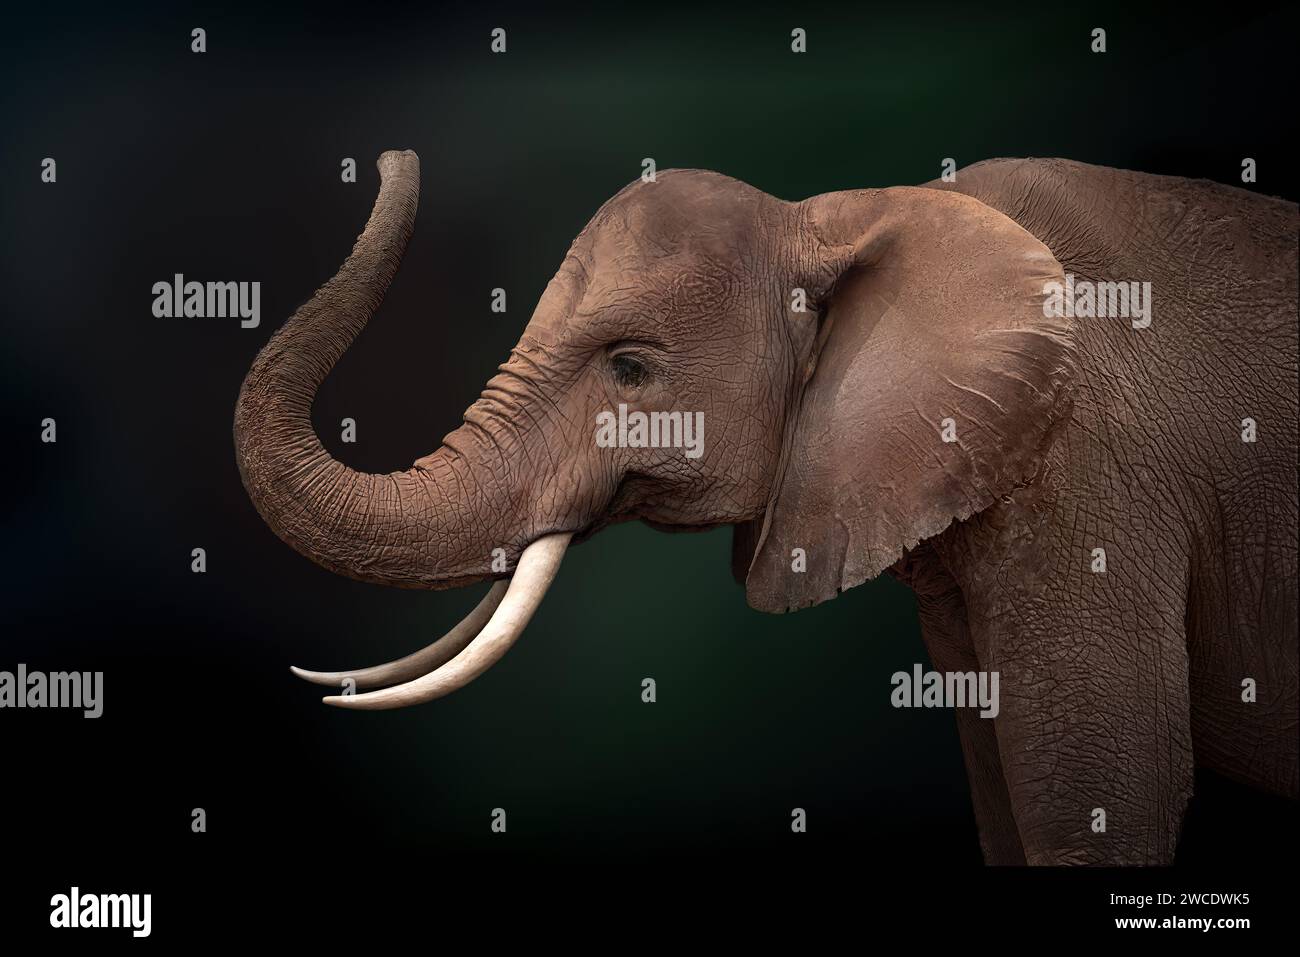 African Bush Elephant (Loxodonta africana) Stock Photo